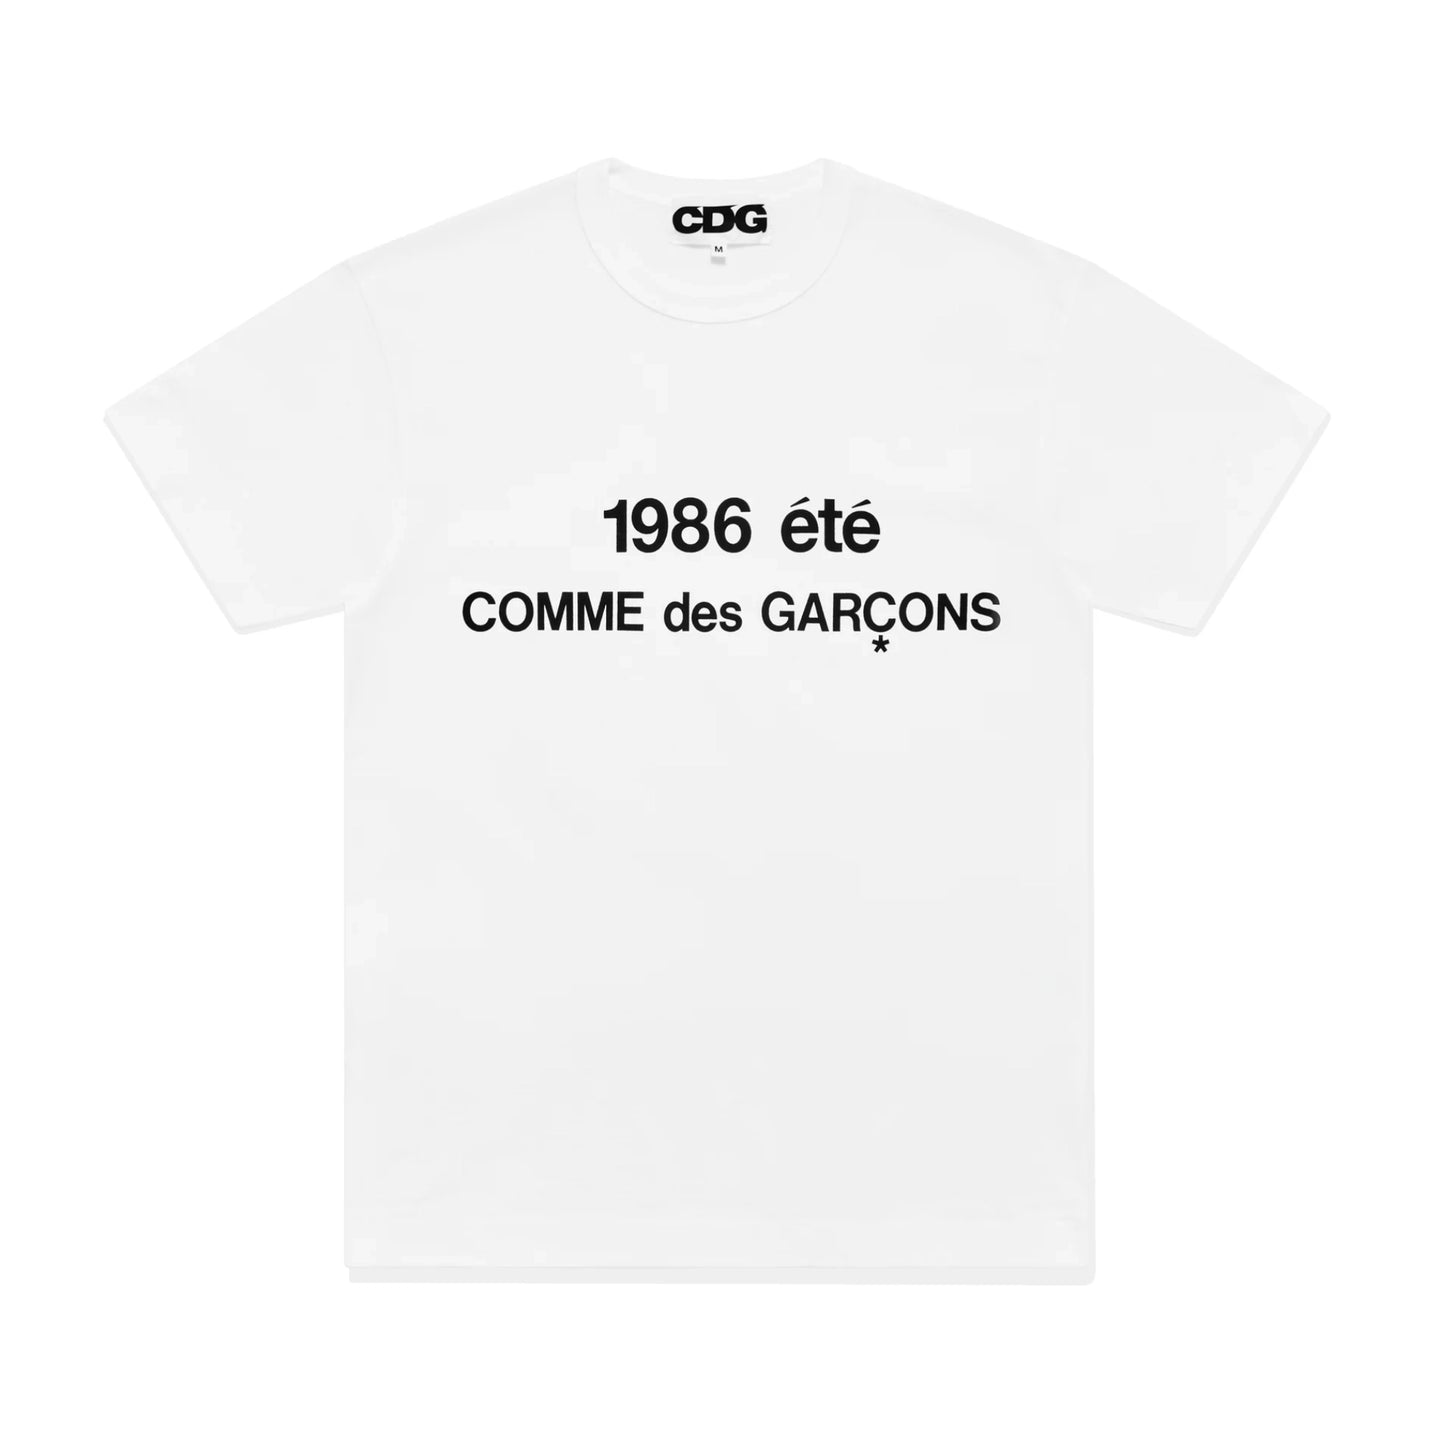 Comme des Garçons T-shirt "Été 1986" White